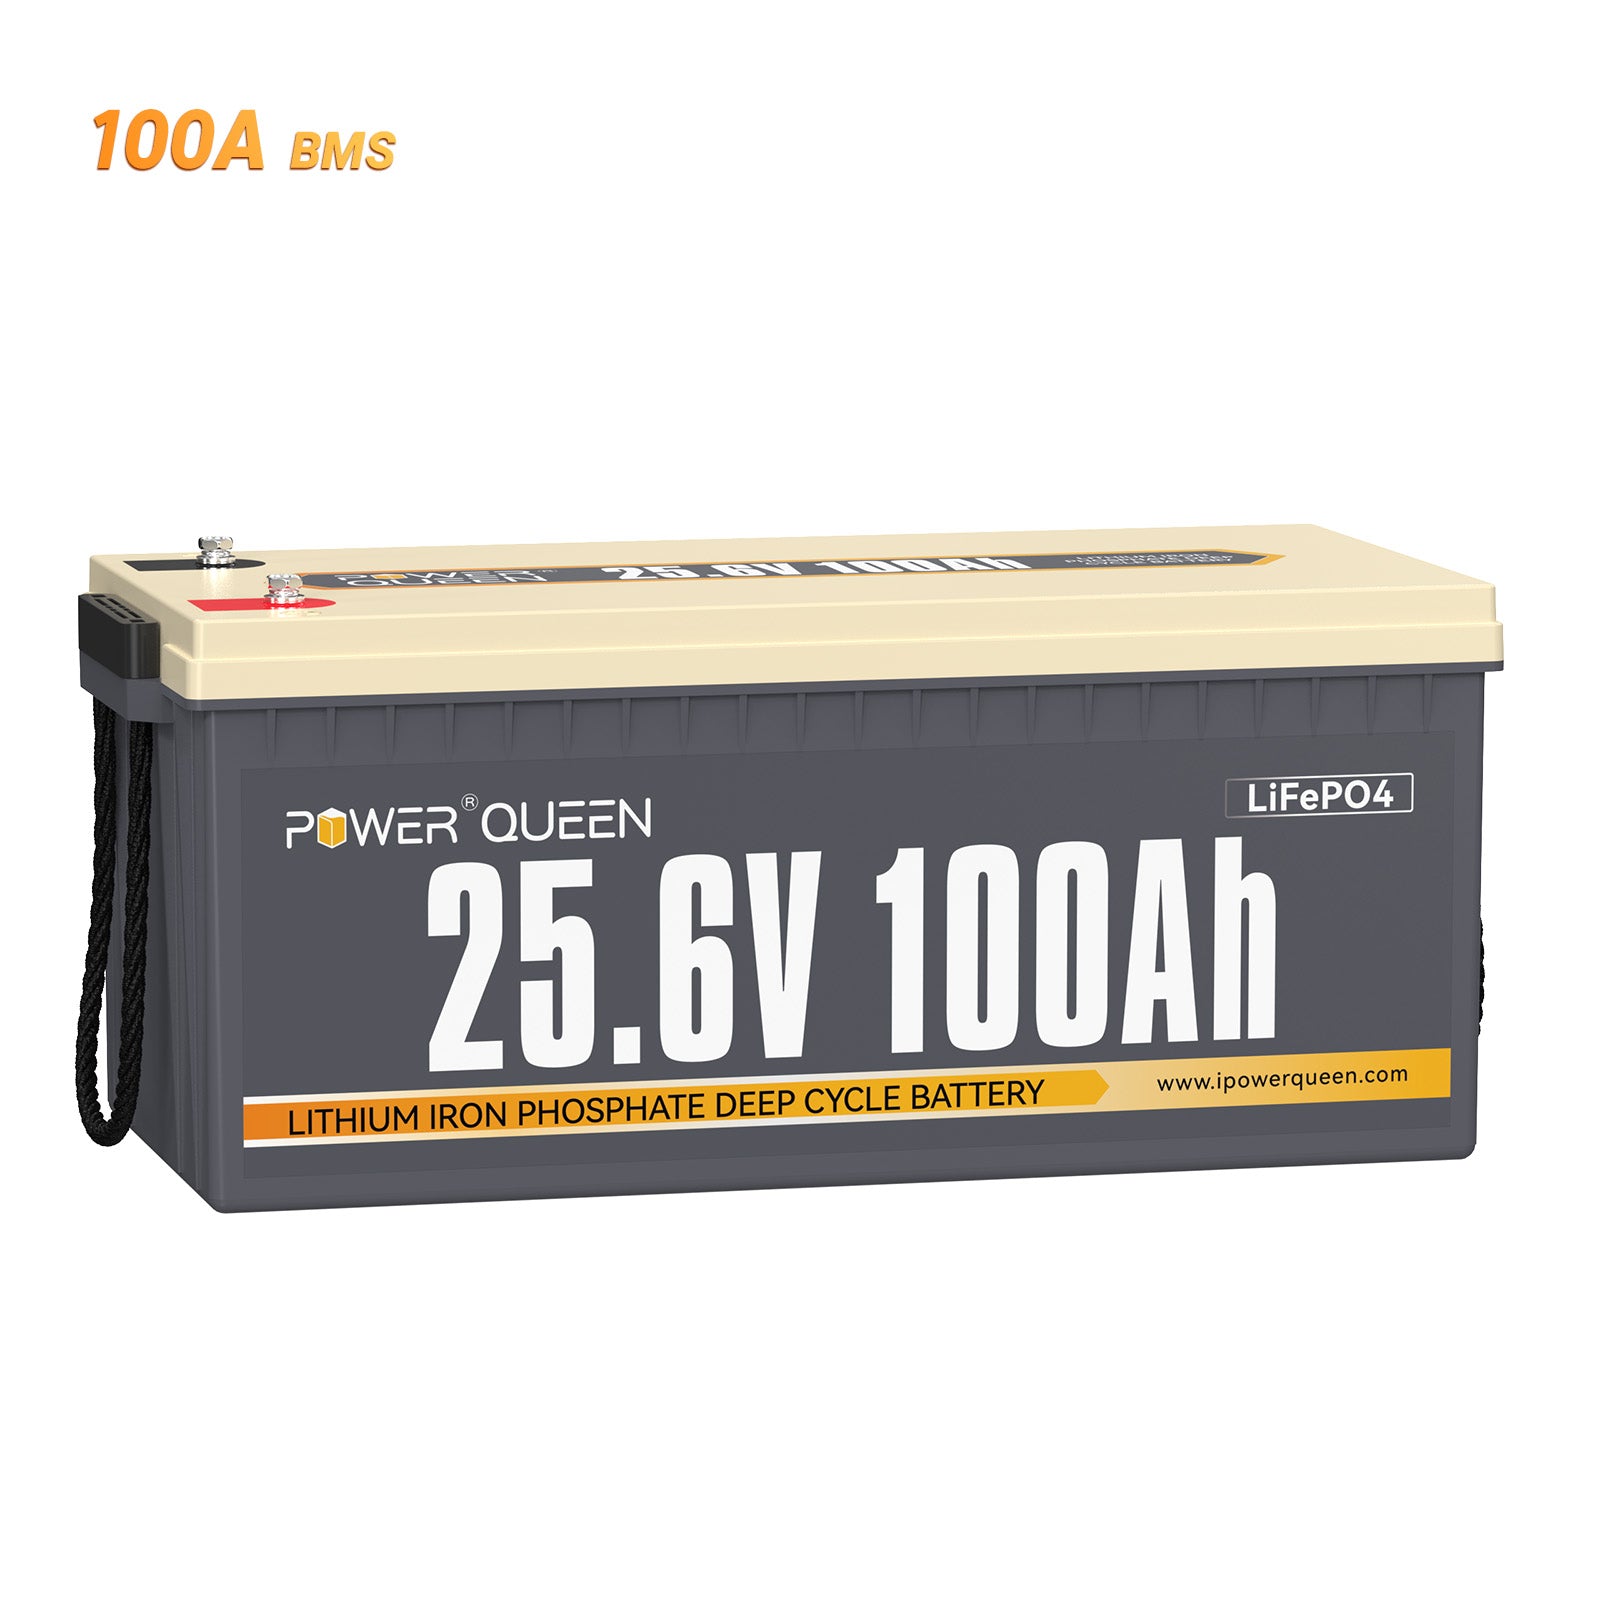 【0% IVA】Batería Power Queen 24V 100Ah LiFePO4, BMS 100A incorporado